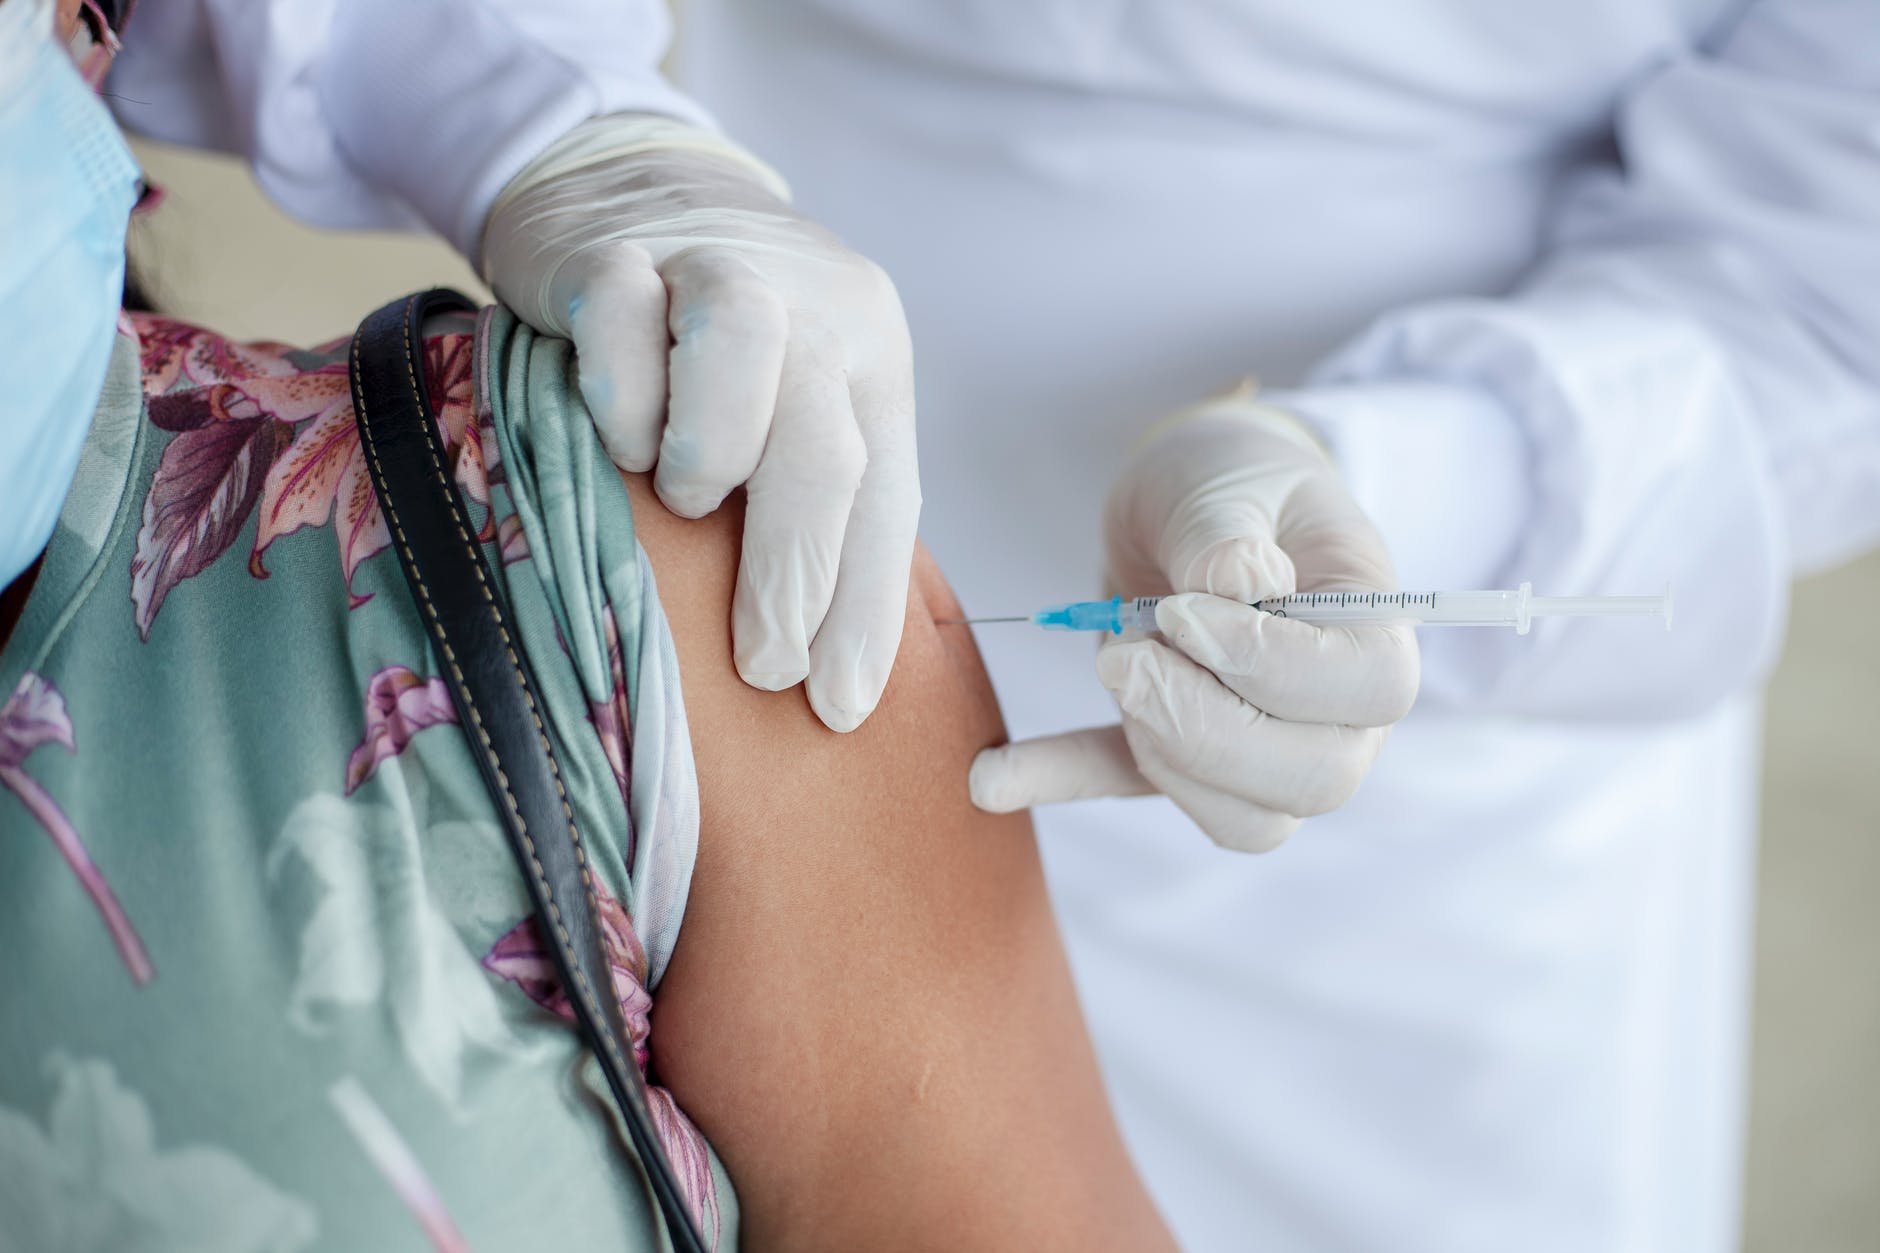 Вакцинация в Запорожской области проходит низкими темпами, ее можно ускорить вдвое – МОЗ